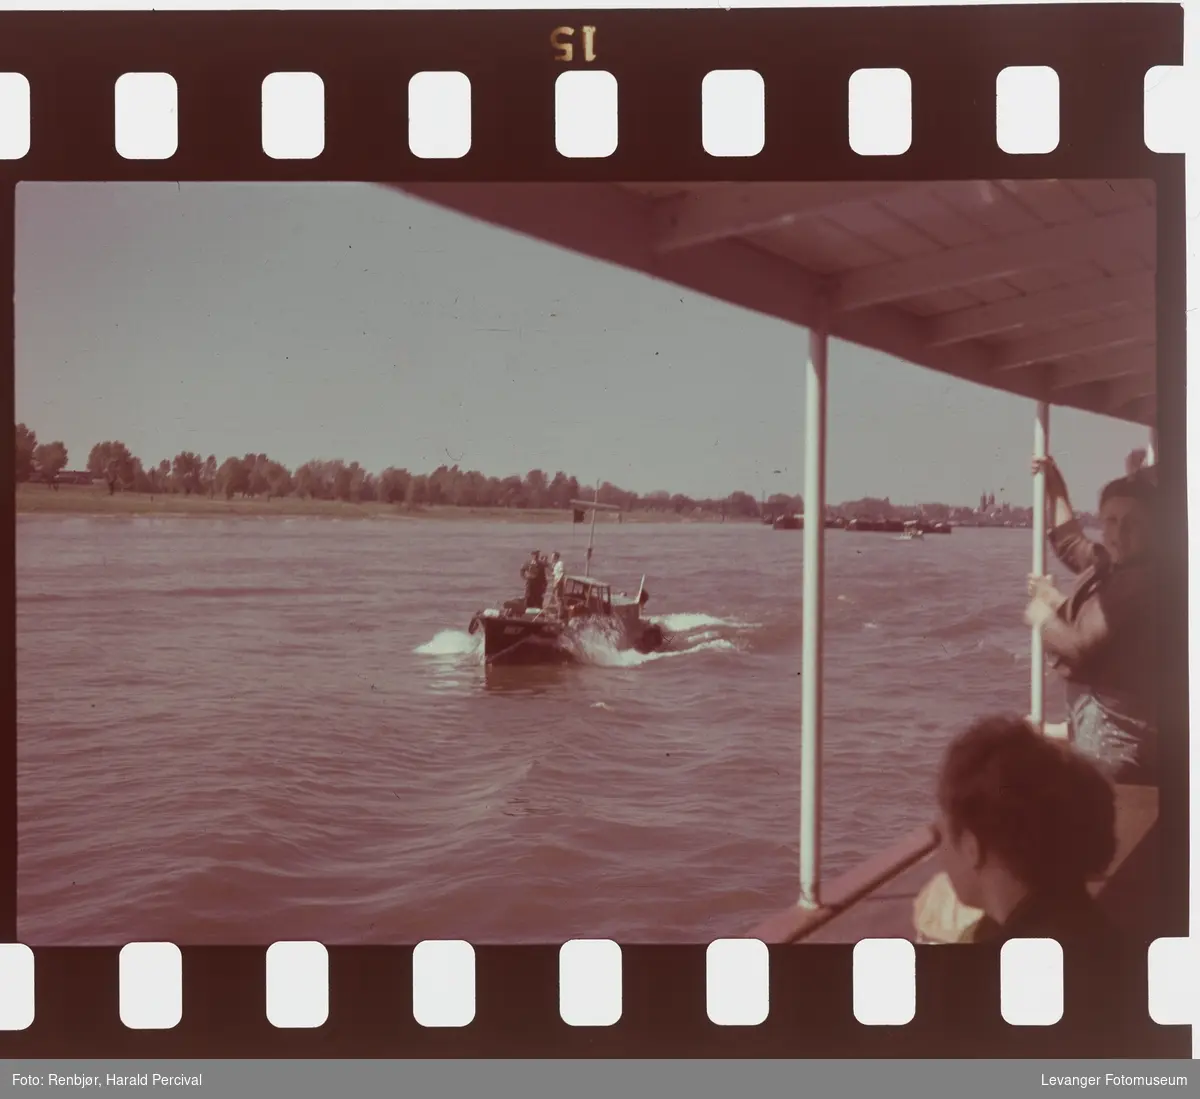 Fra Tyskland i forbindelse med Renbjørs deltaking på den årlige Fotomessen i Køln. På båttur på Rhinen.